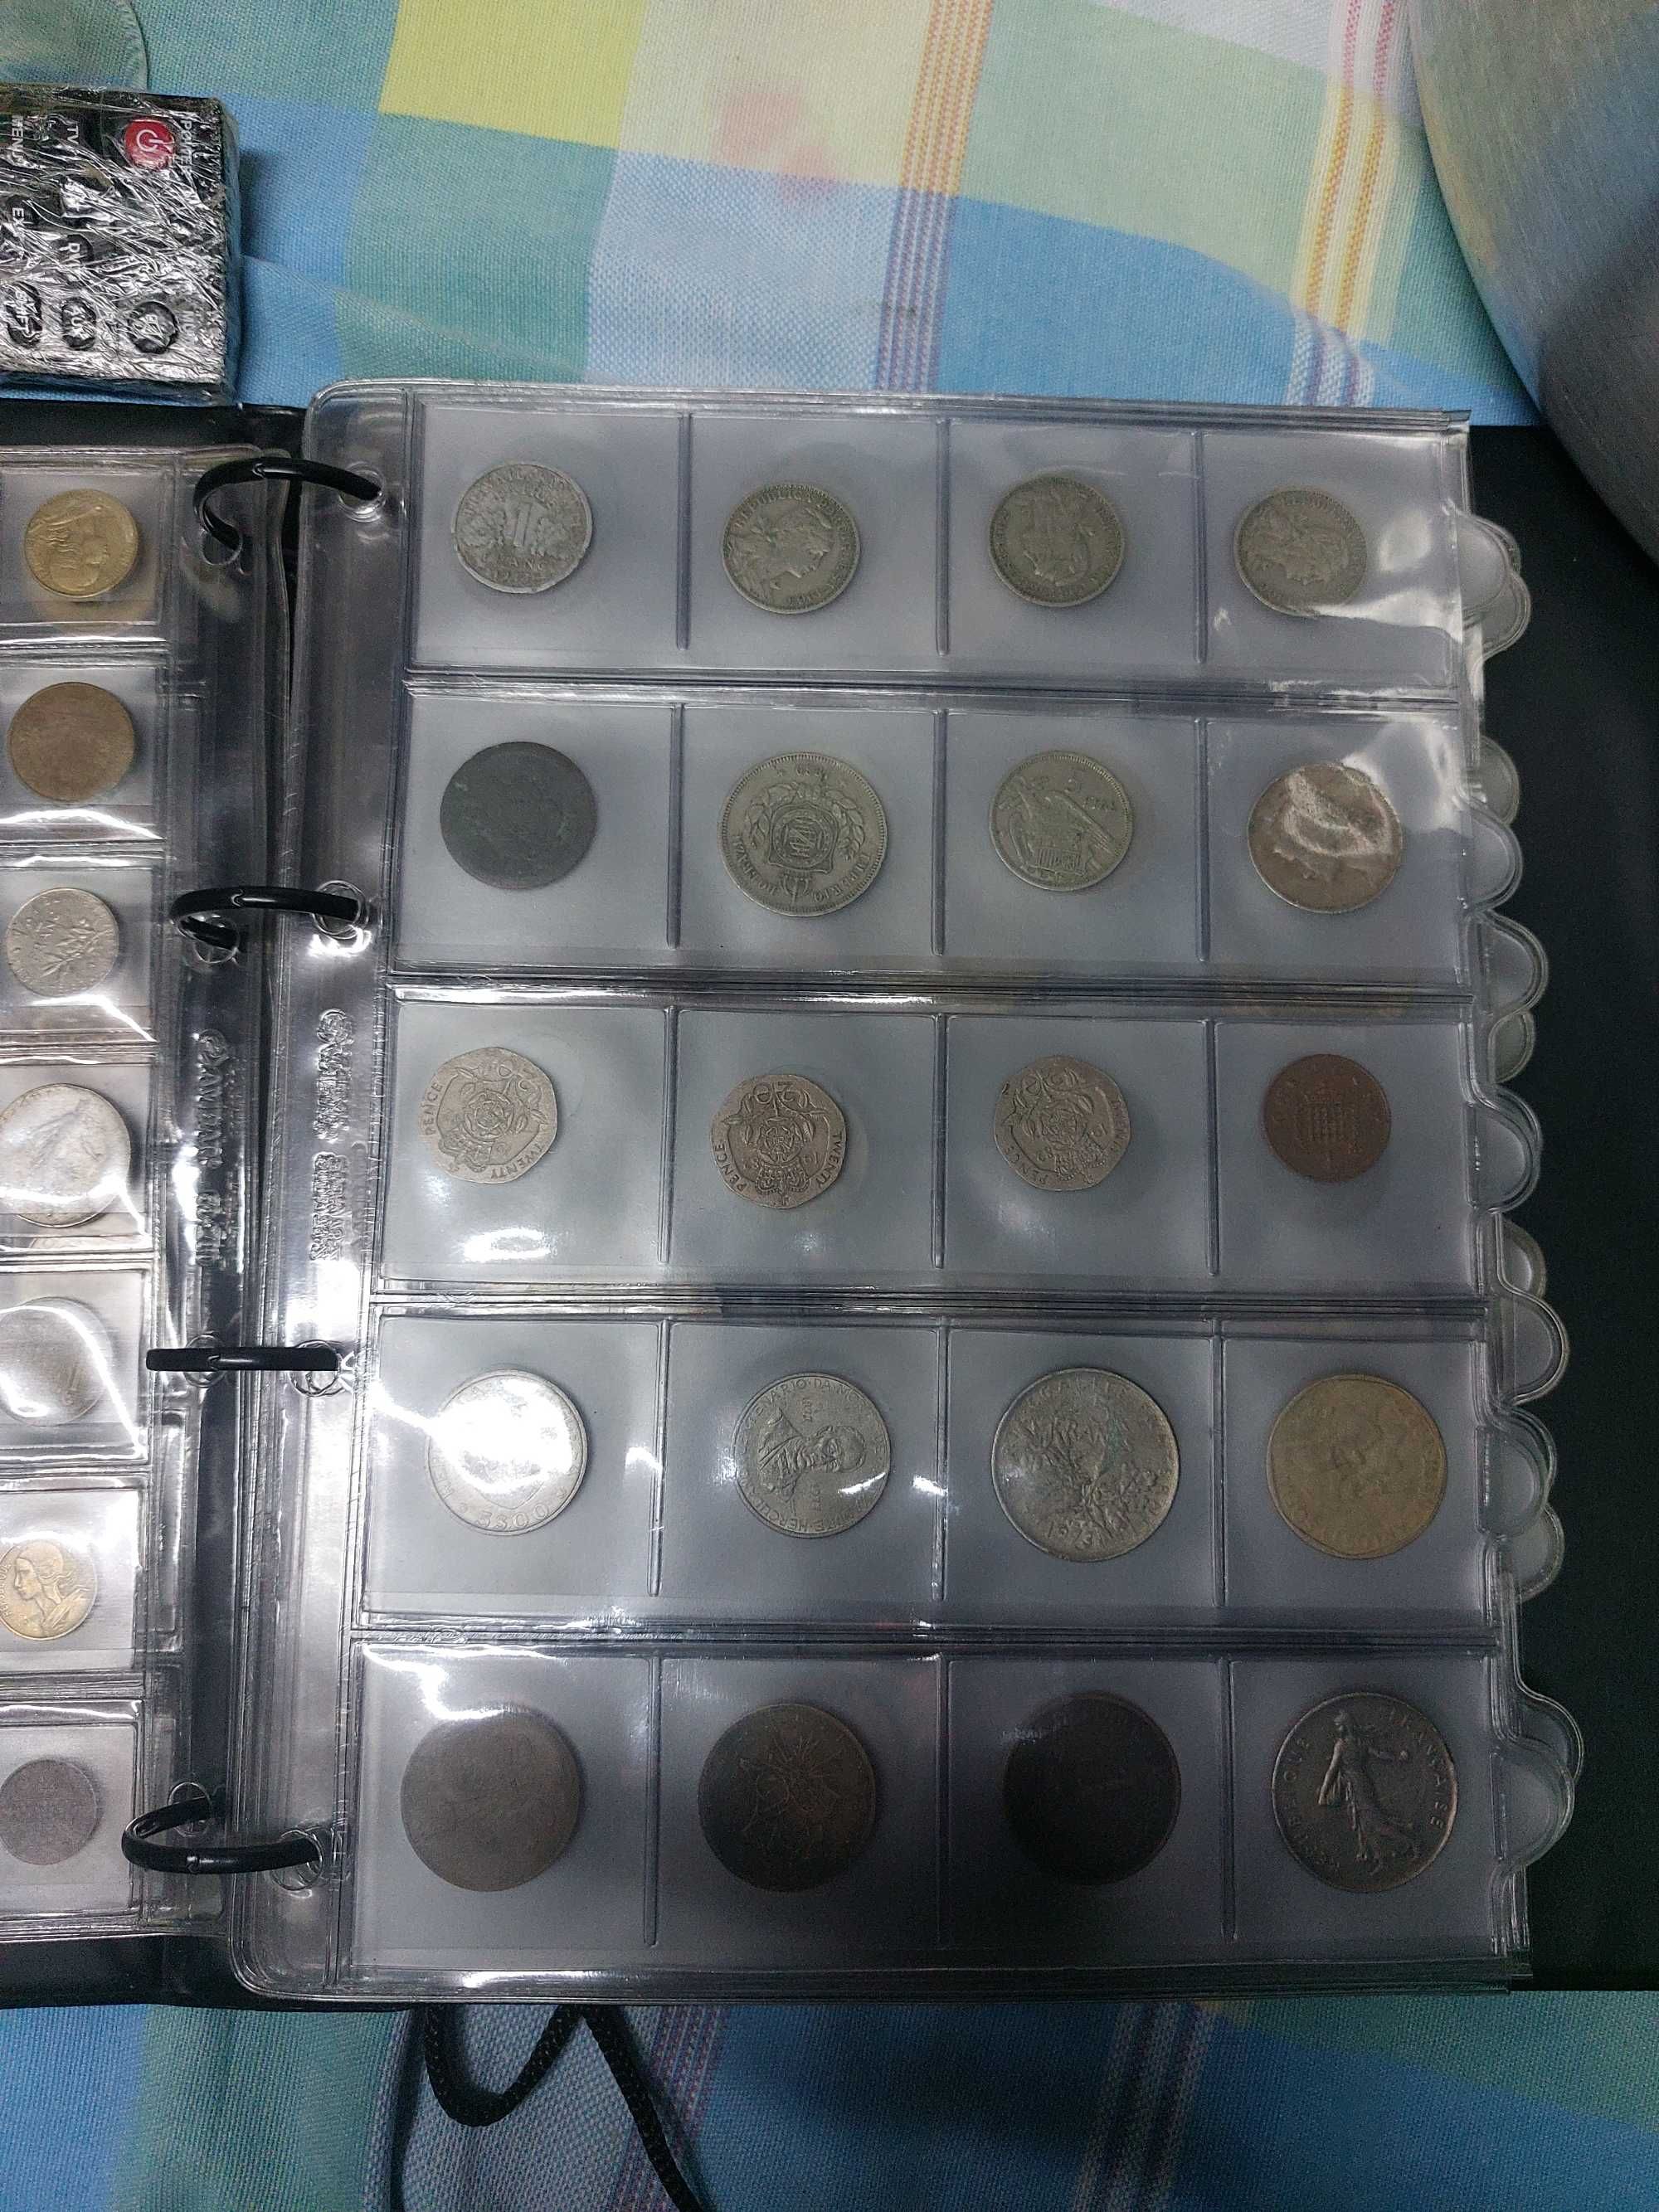 Lote de moedas antigas ou venda em separado possível troca